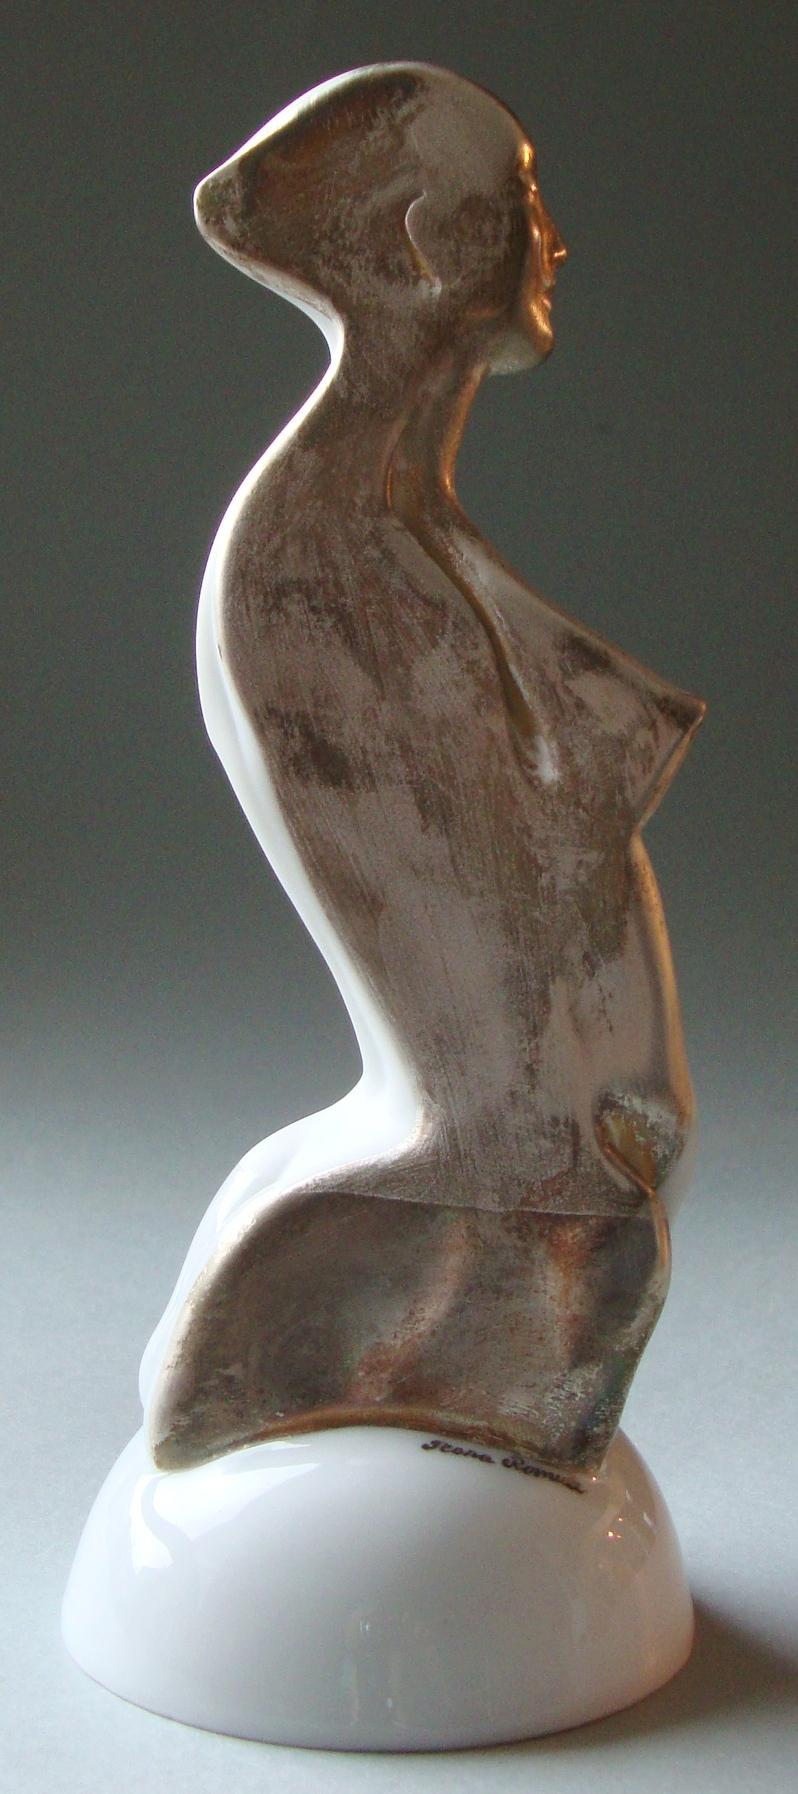 La figure de la femme sur un piédestal

Porcelaine, argent, h 20 cm
par Ilona Romule, sculpteur de premier plan en Lettonie

La 